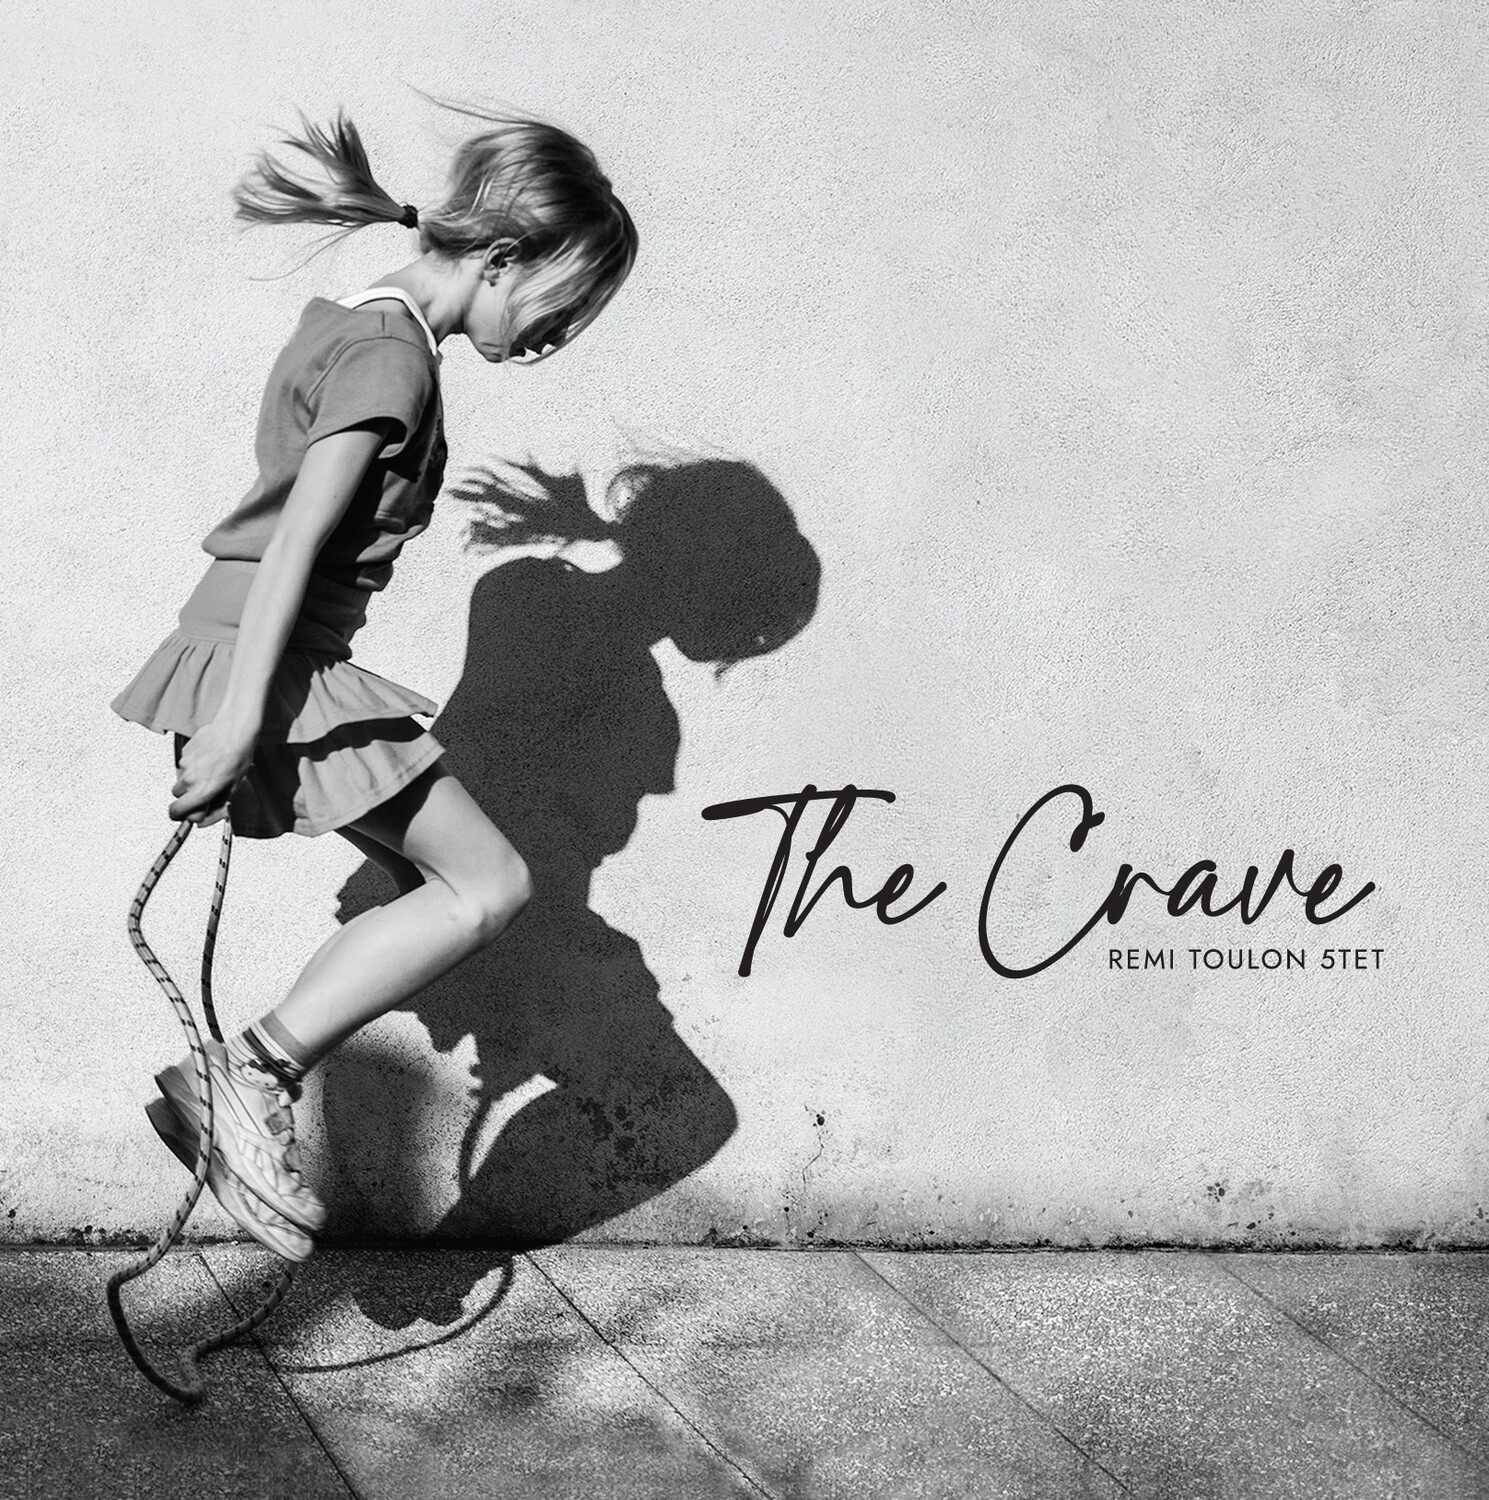 CD The Crave - Rémi Toulon 5tet